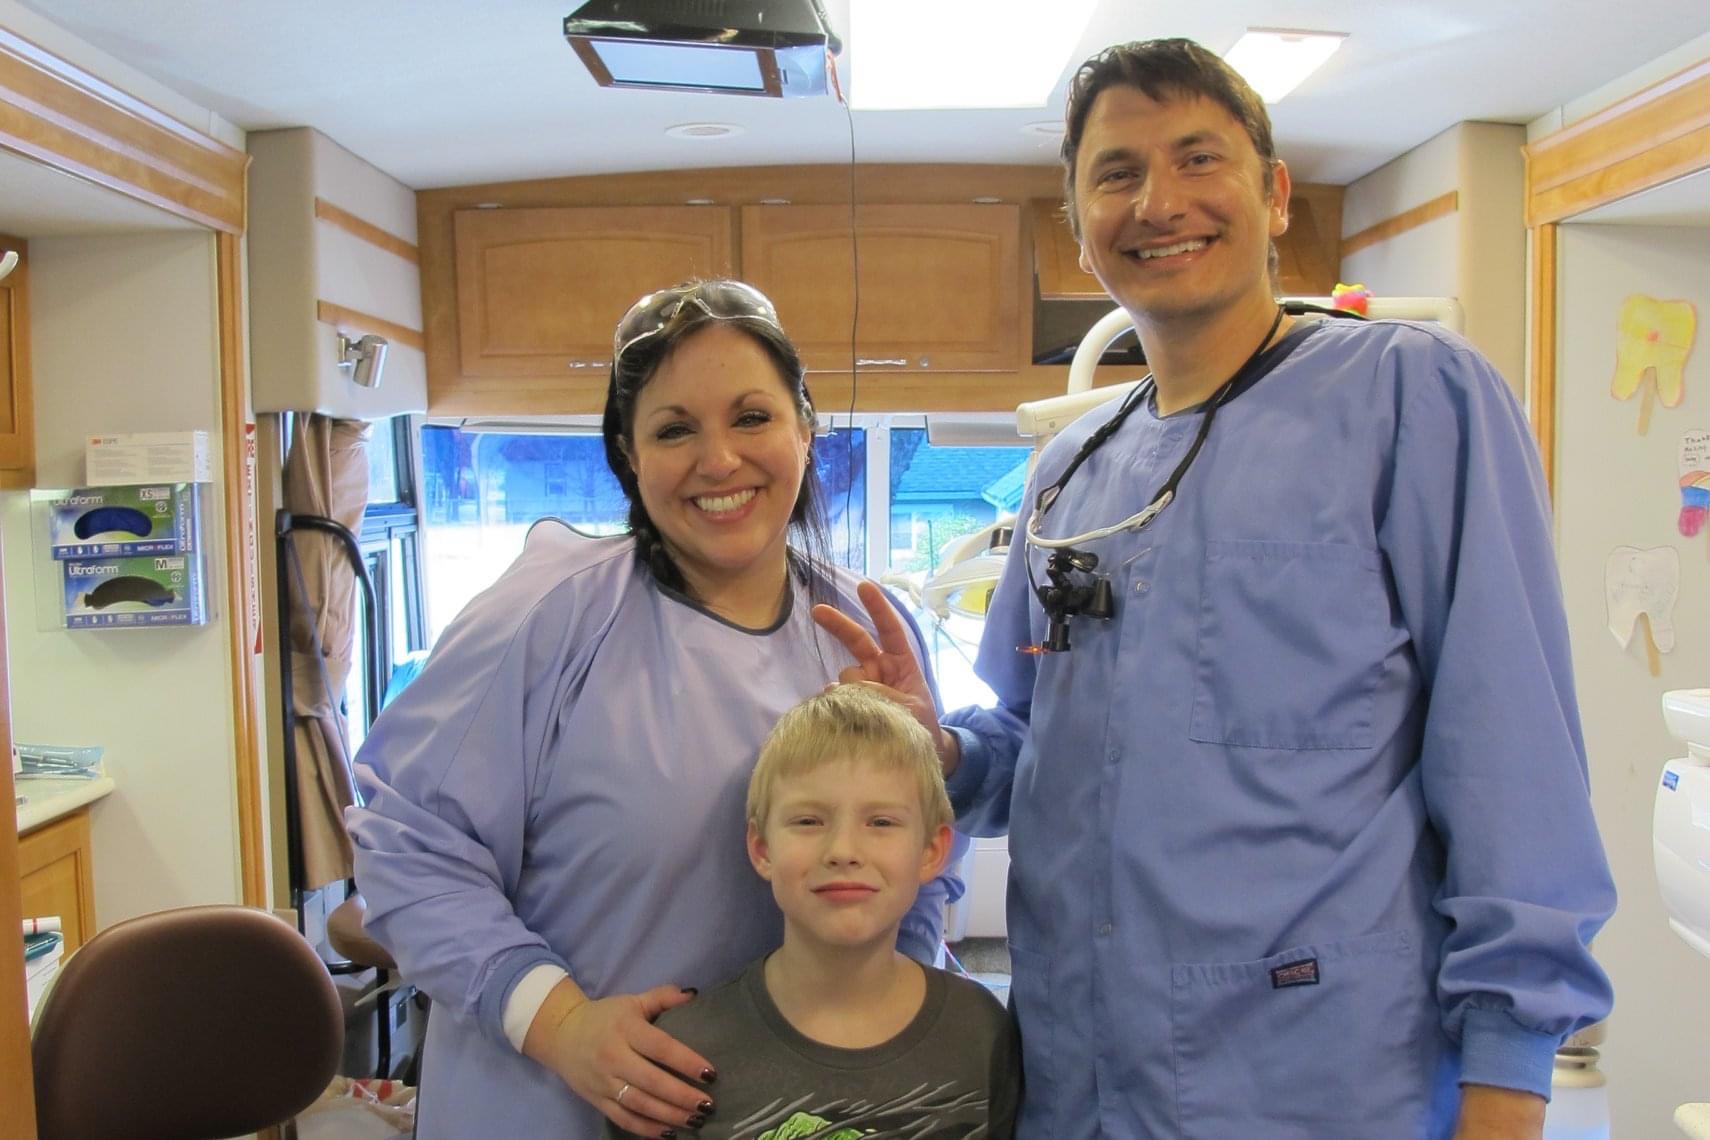 Doctor Paskalev dental team member and dental patient smiling together